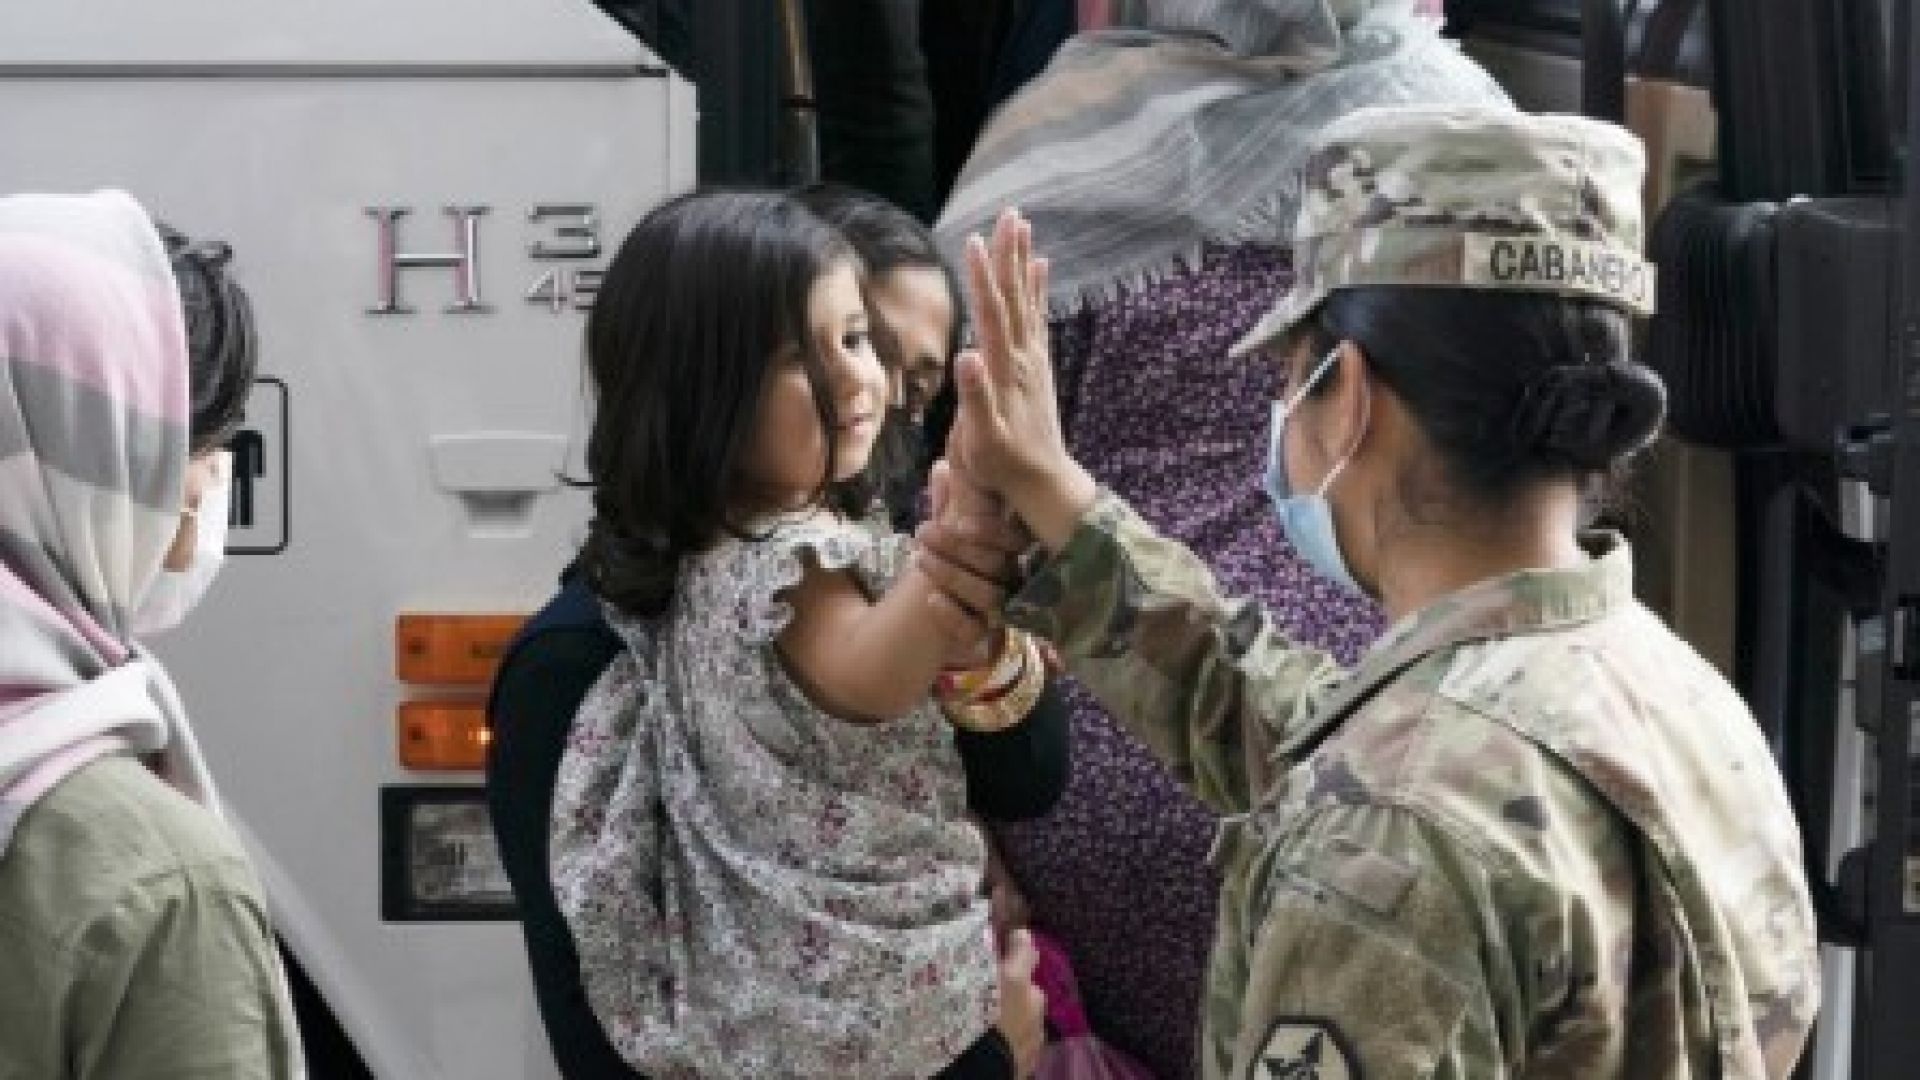 САЩ приключиха евакуацията от Афганистан ден по-рано: Дойде ли краят на джихада 